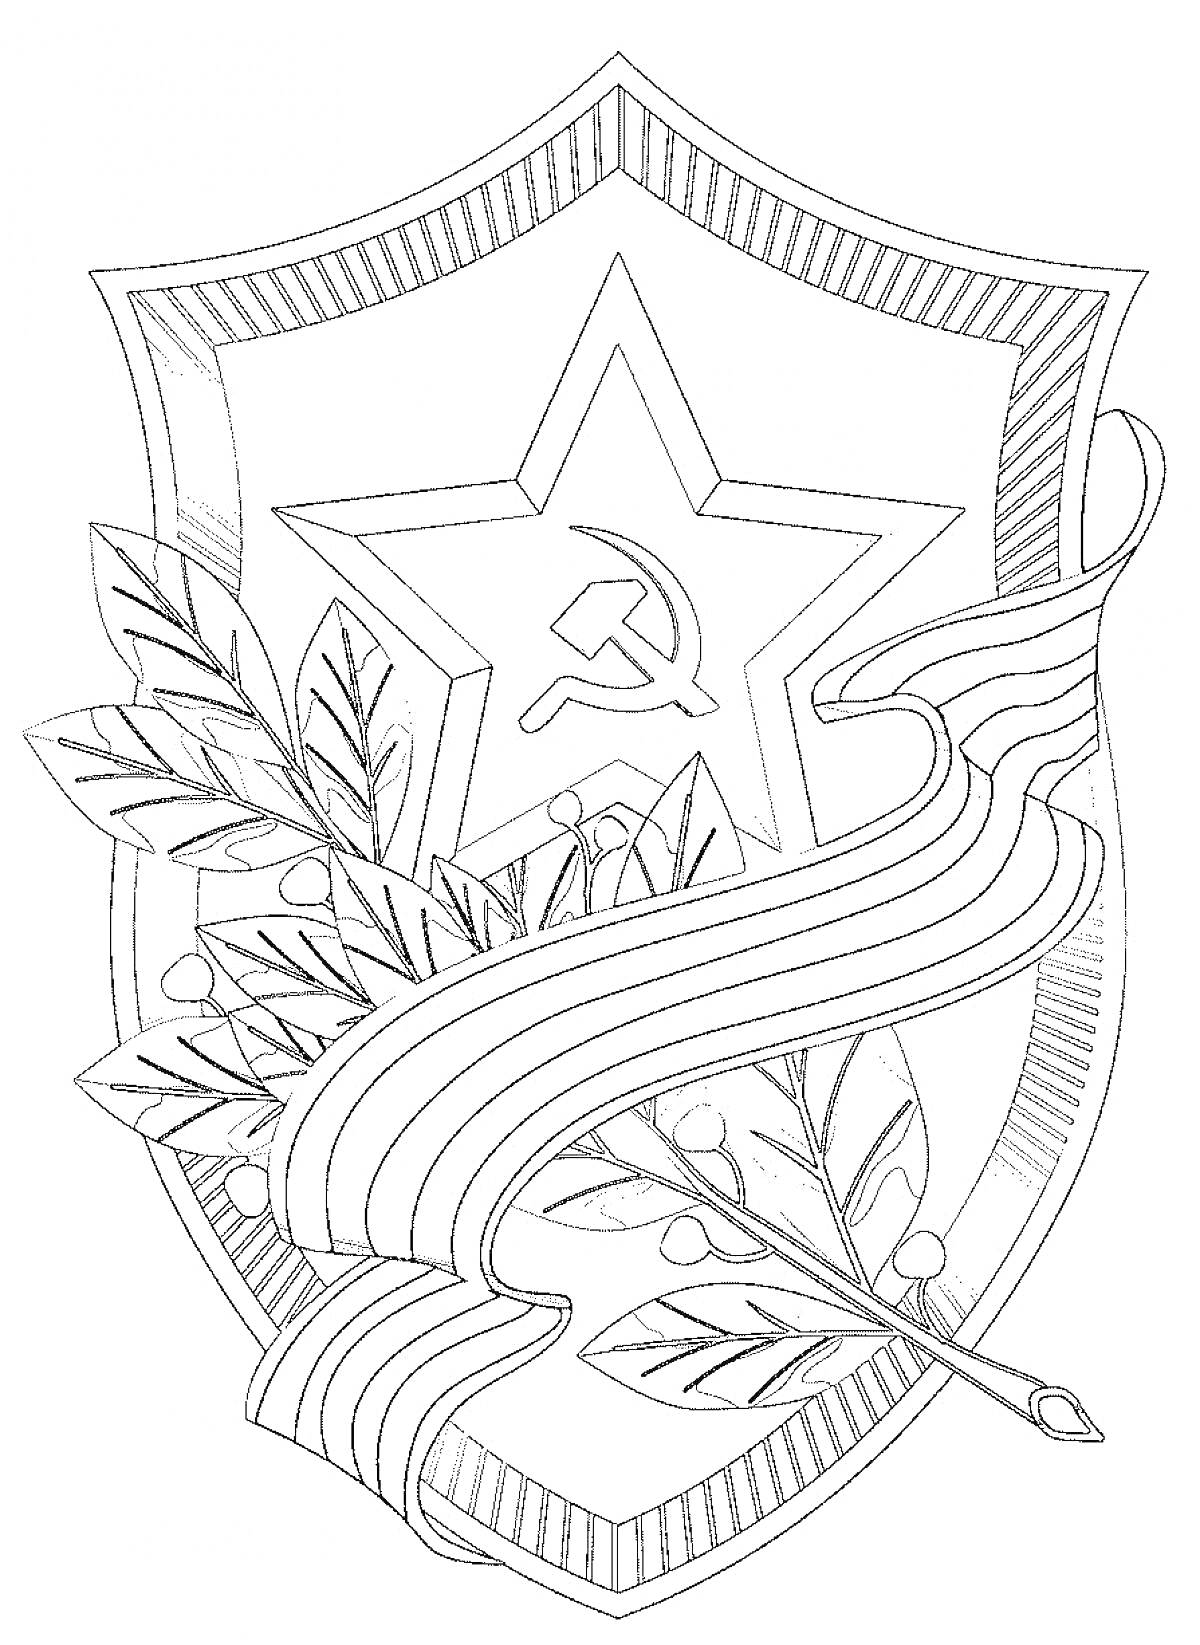 Щит с георгиевской лентой, звездой и советской символикой (серп и молот) и лавровыми ветвями